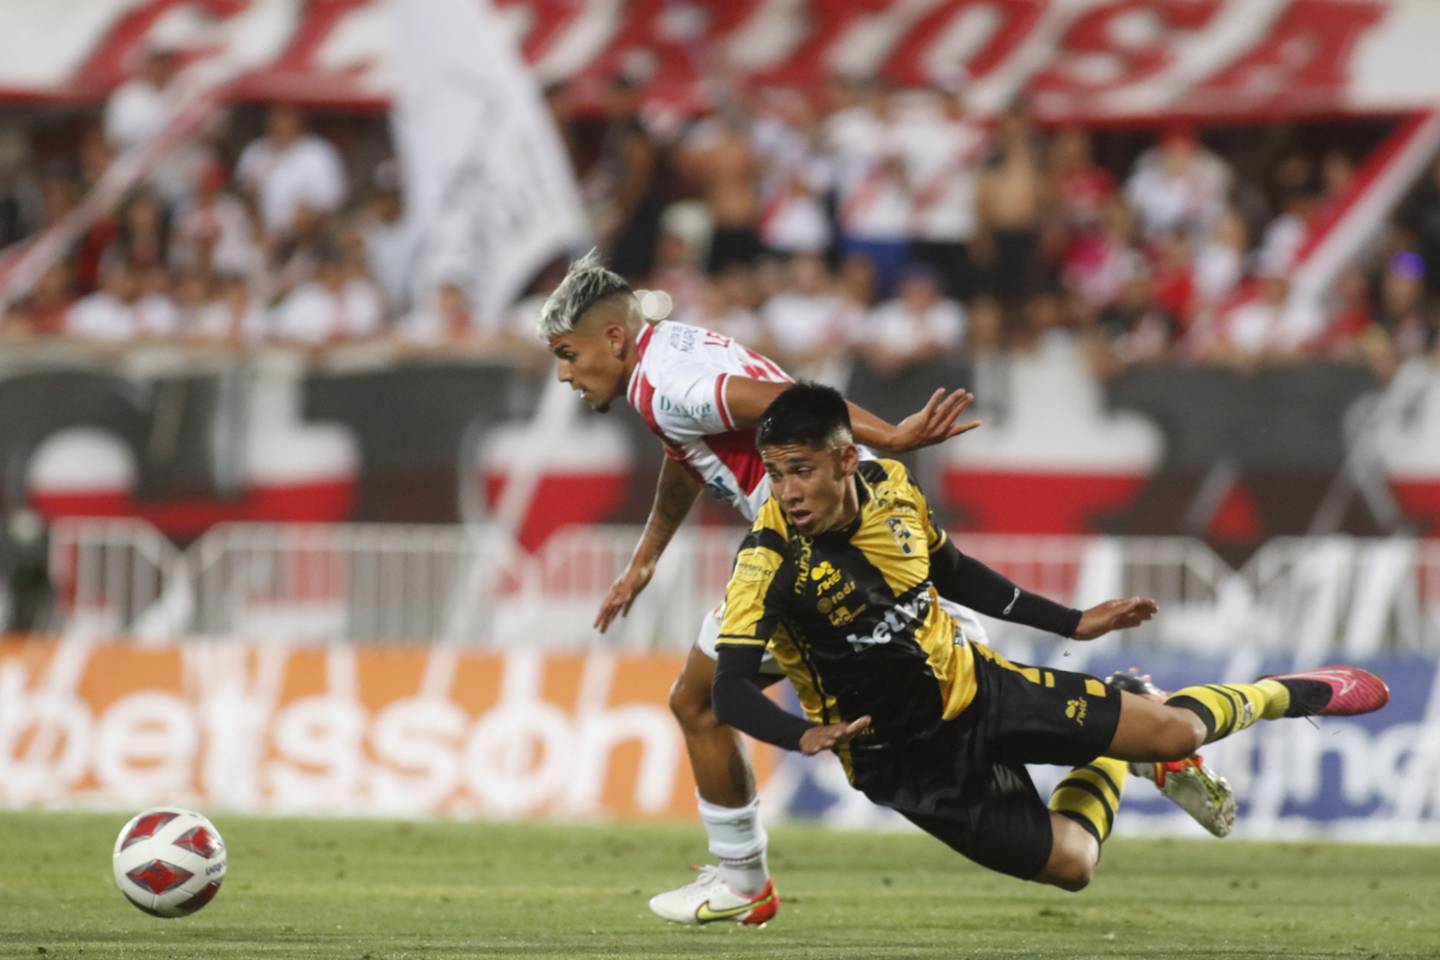 El jugador de Curicó Unido Yerko Leiva disputa el balón contra Sebastián Galani de Coquimbo Unido durante el partido por Primera División jugado en el estadio La Granja.